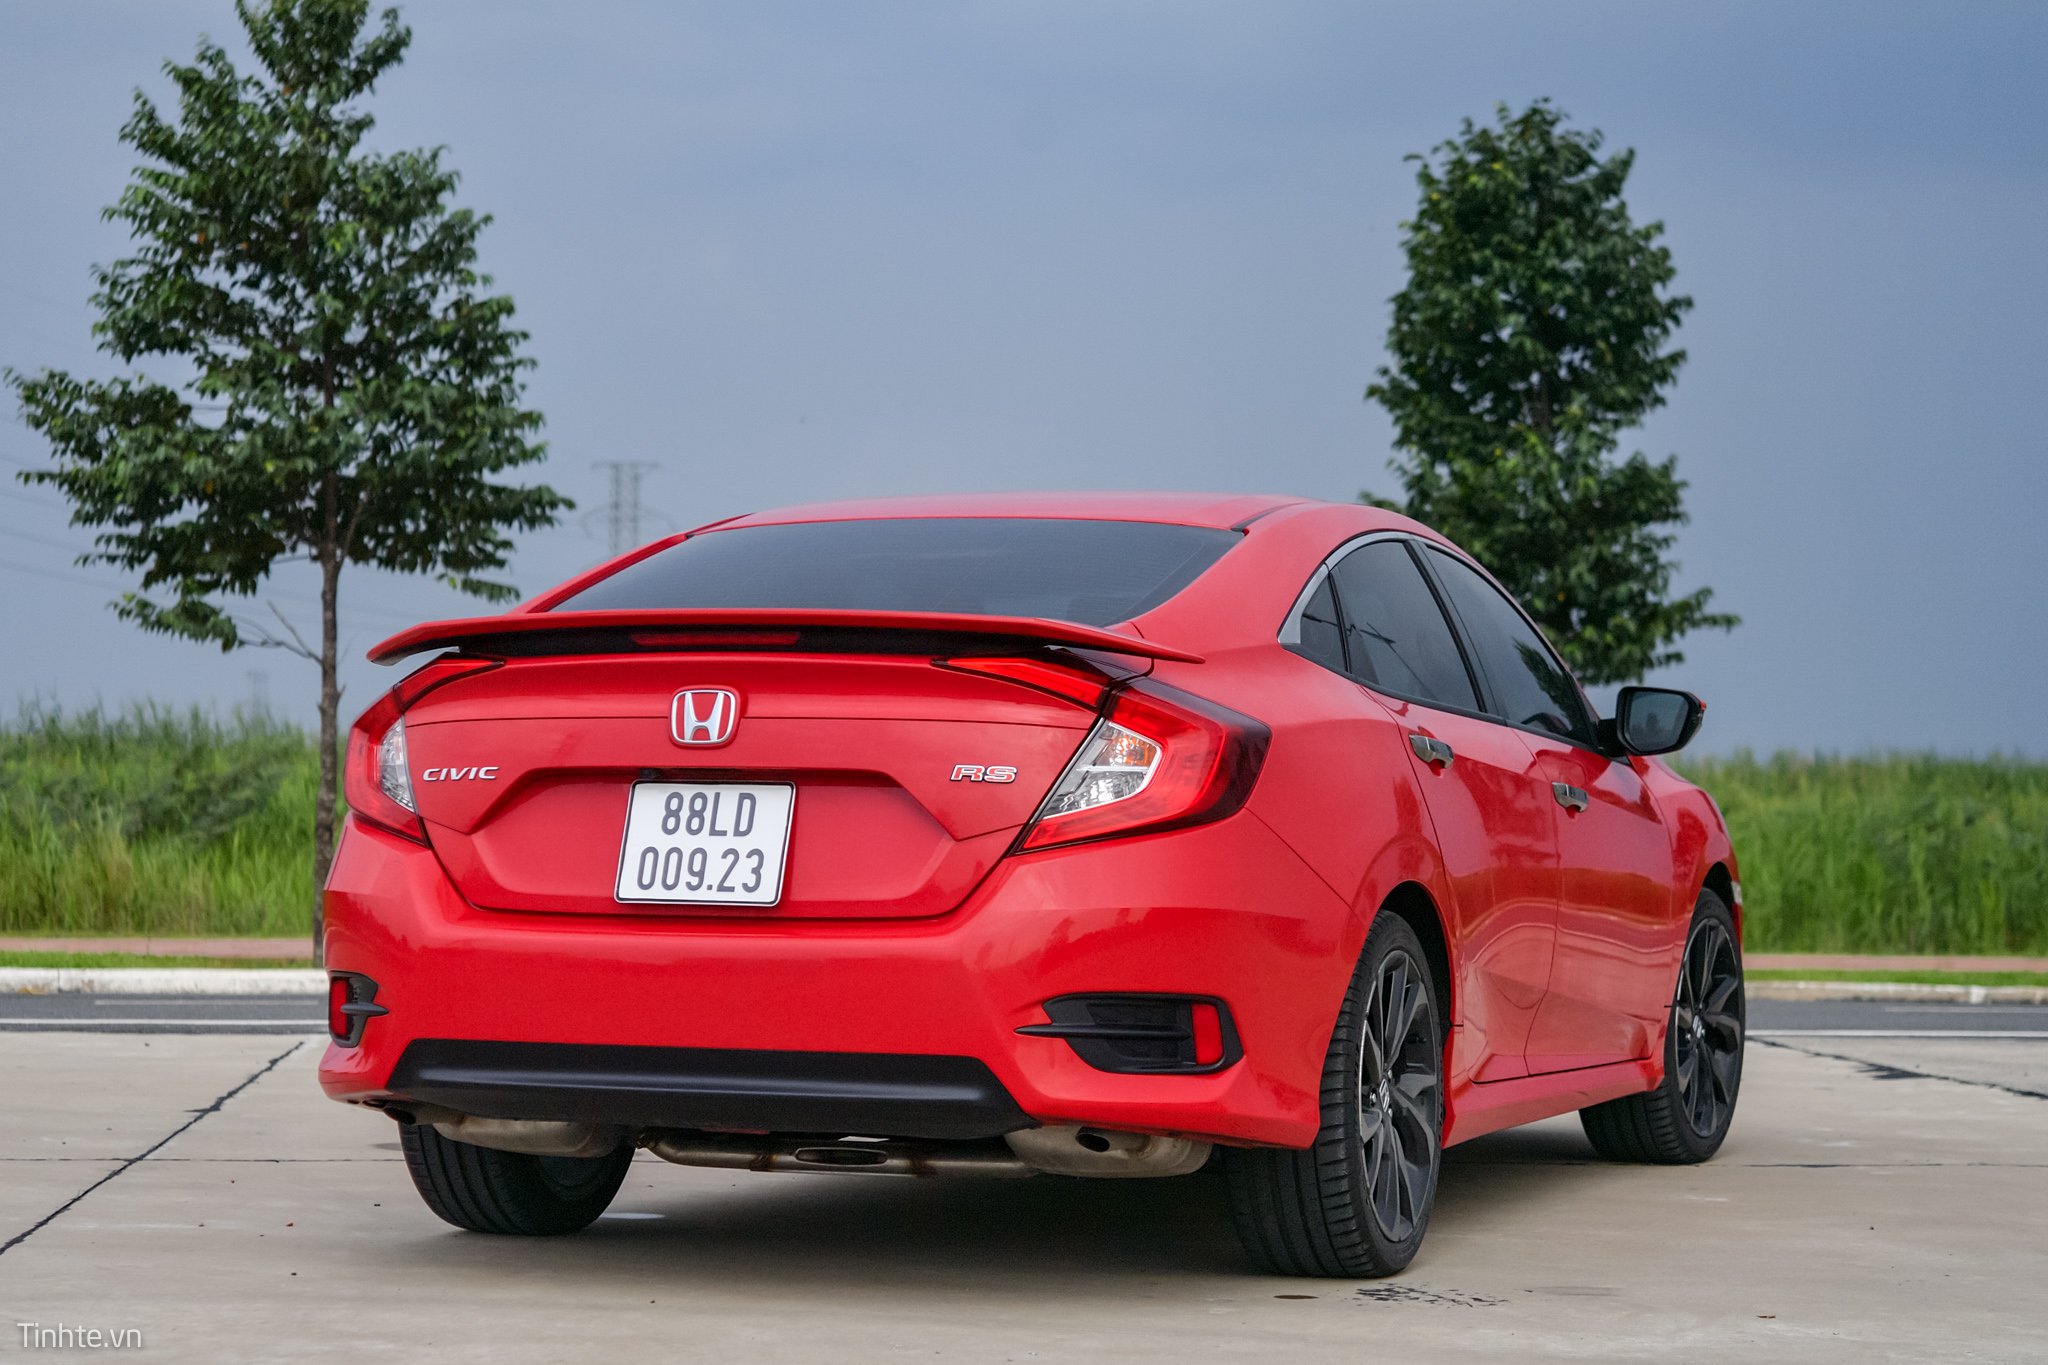 Đánh giá thiết kế ngoại hình Honda Civic RS 2019